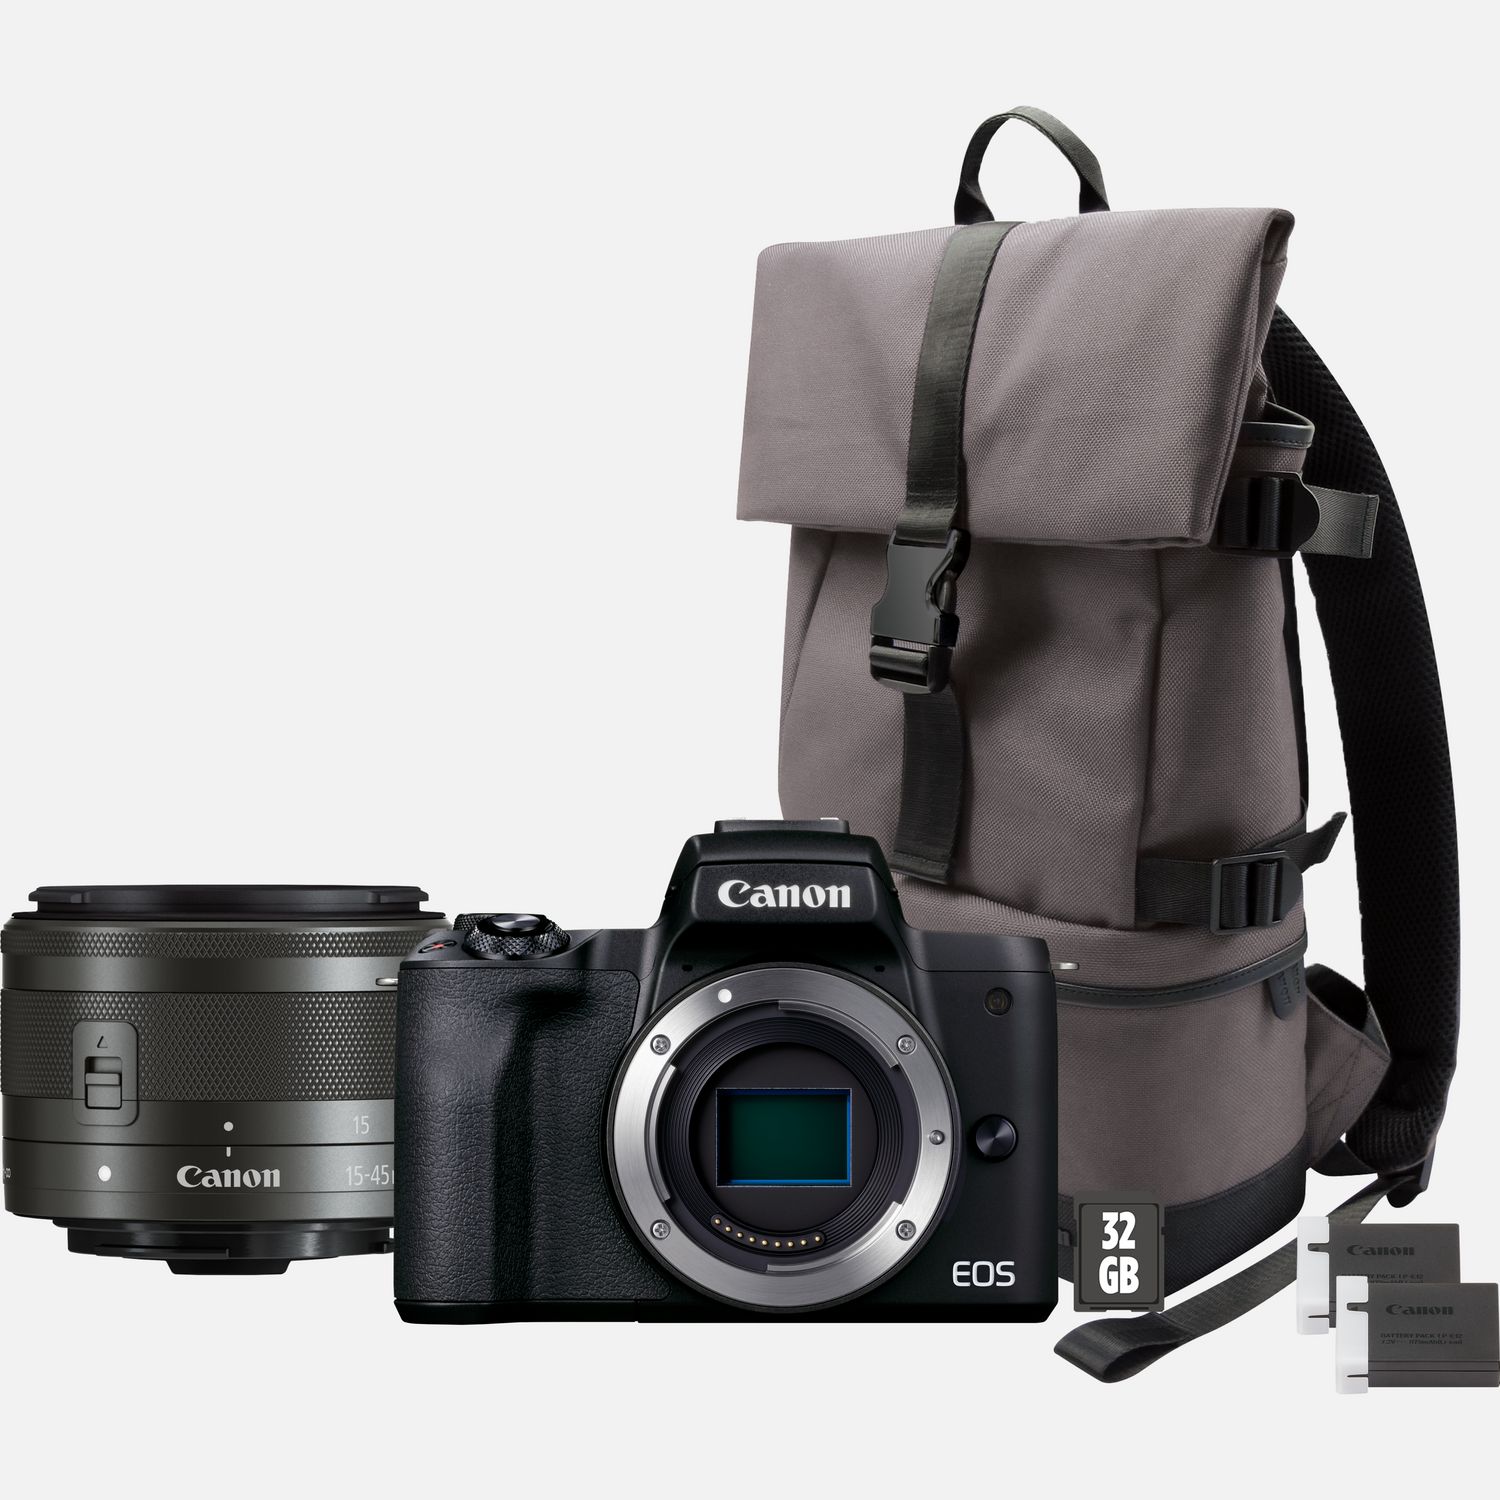 Image of Fotocamera mirrorless Canon EOS M50 Mark II, Nero + obiettivo EF-M 15-45mm IS STM + zaino + scheda SD + batteria di ricambio